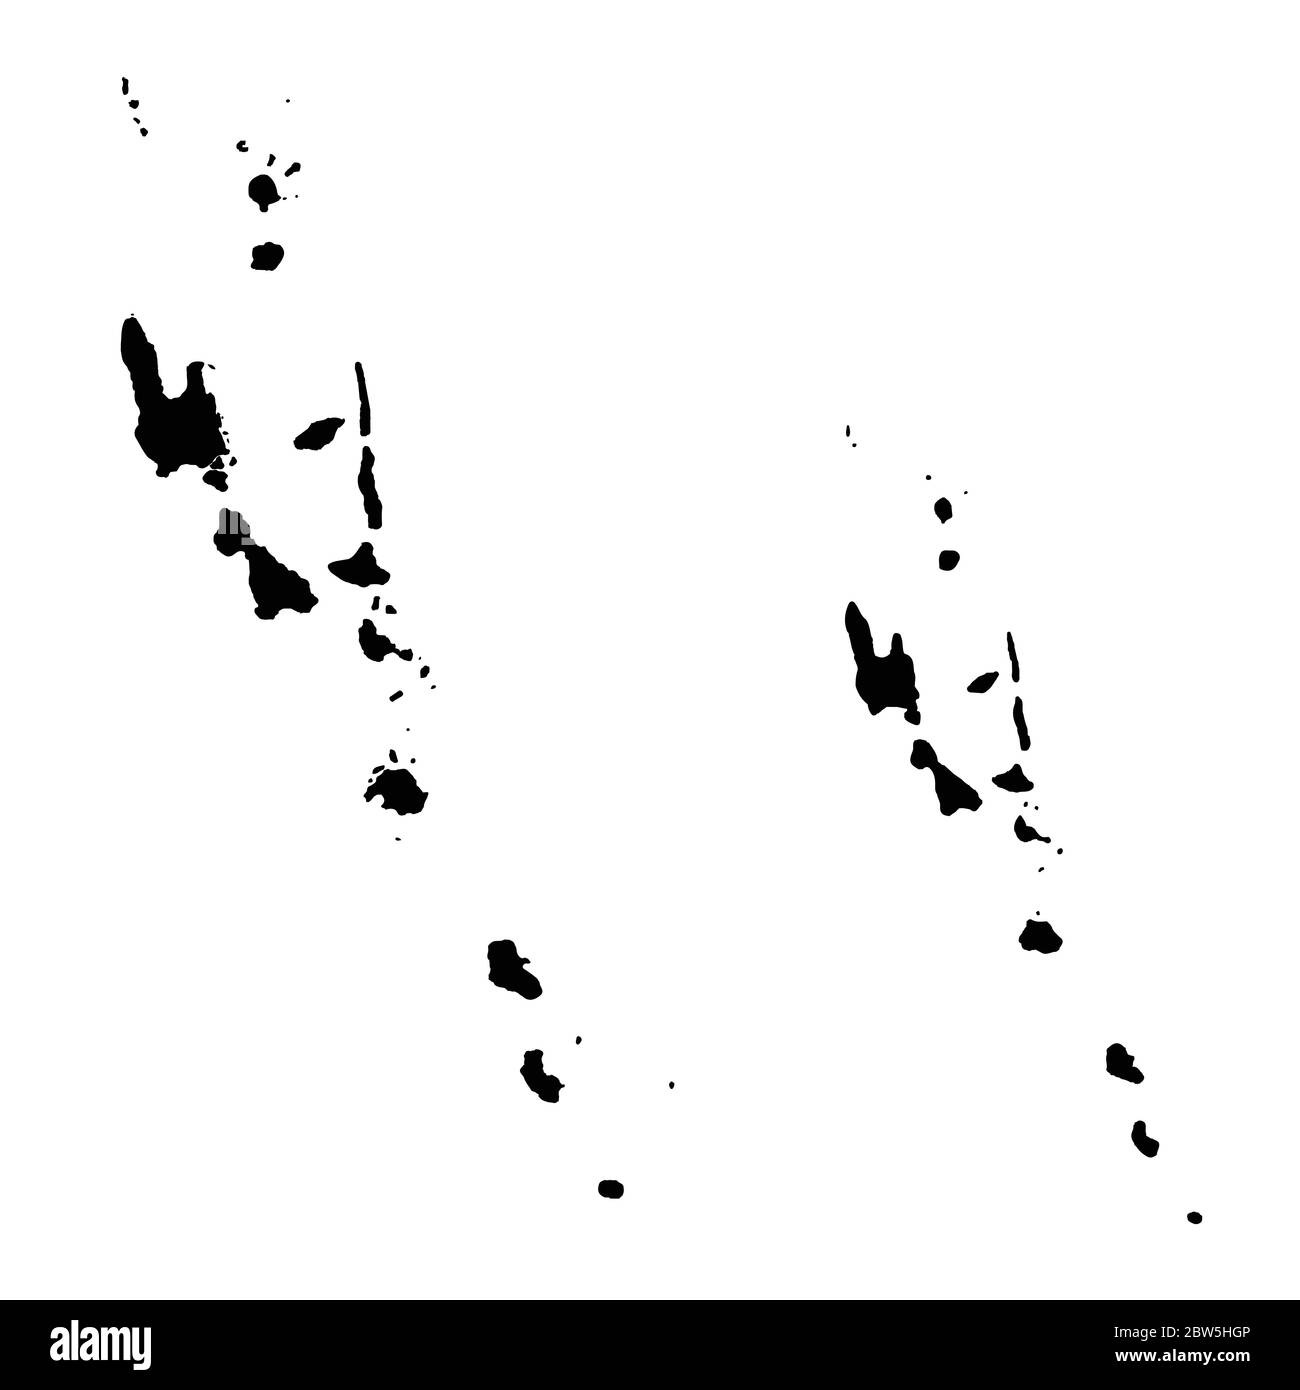 Vektorkarte Vanuatu und Port vila. Land und Hauptstadt. Isolierte Vektorgrafik. Schwarz auf weißem Hintergrund. EPS 10-Abbildung. Stock Vektor